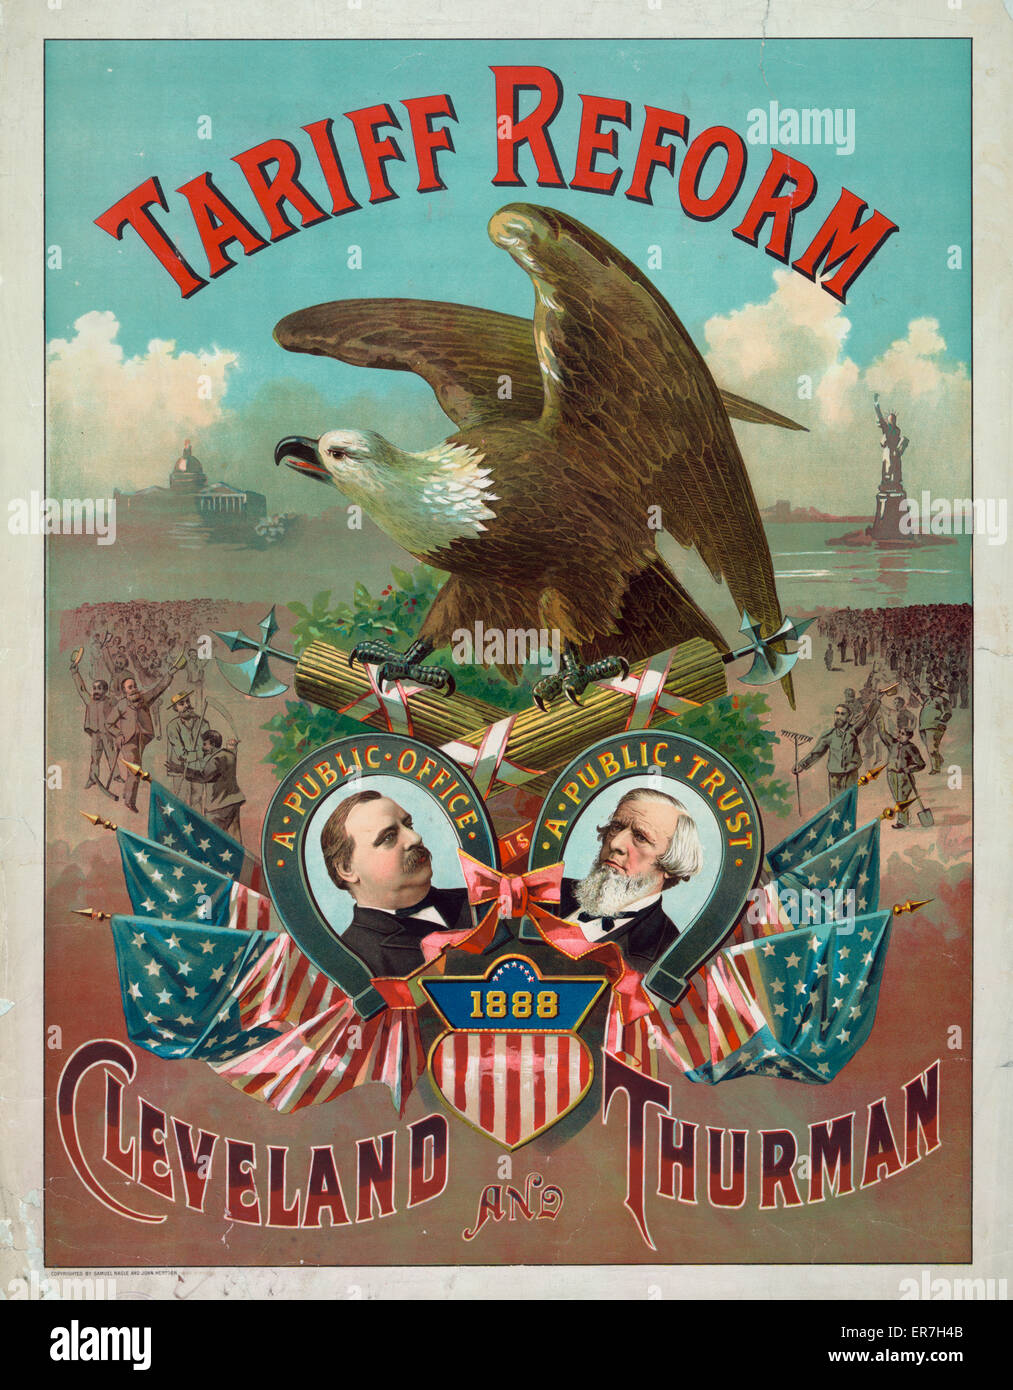 La riforma di tariffa. Cleveland e Thurman. Data c1888 Sett. 17. Foto Stock